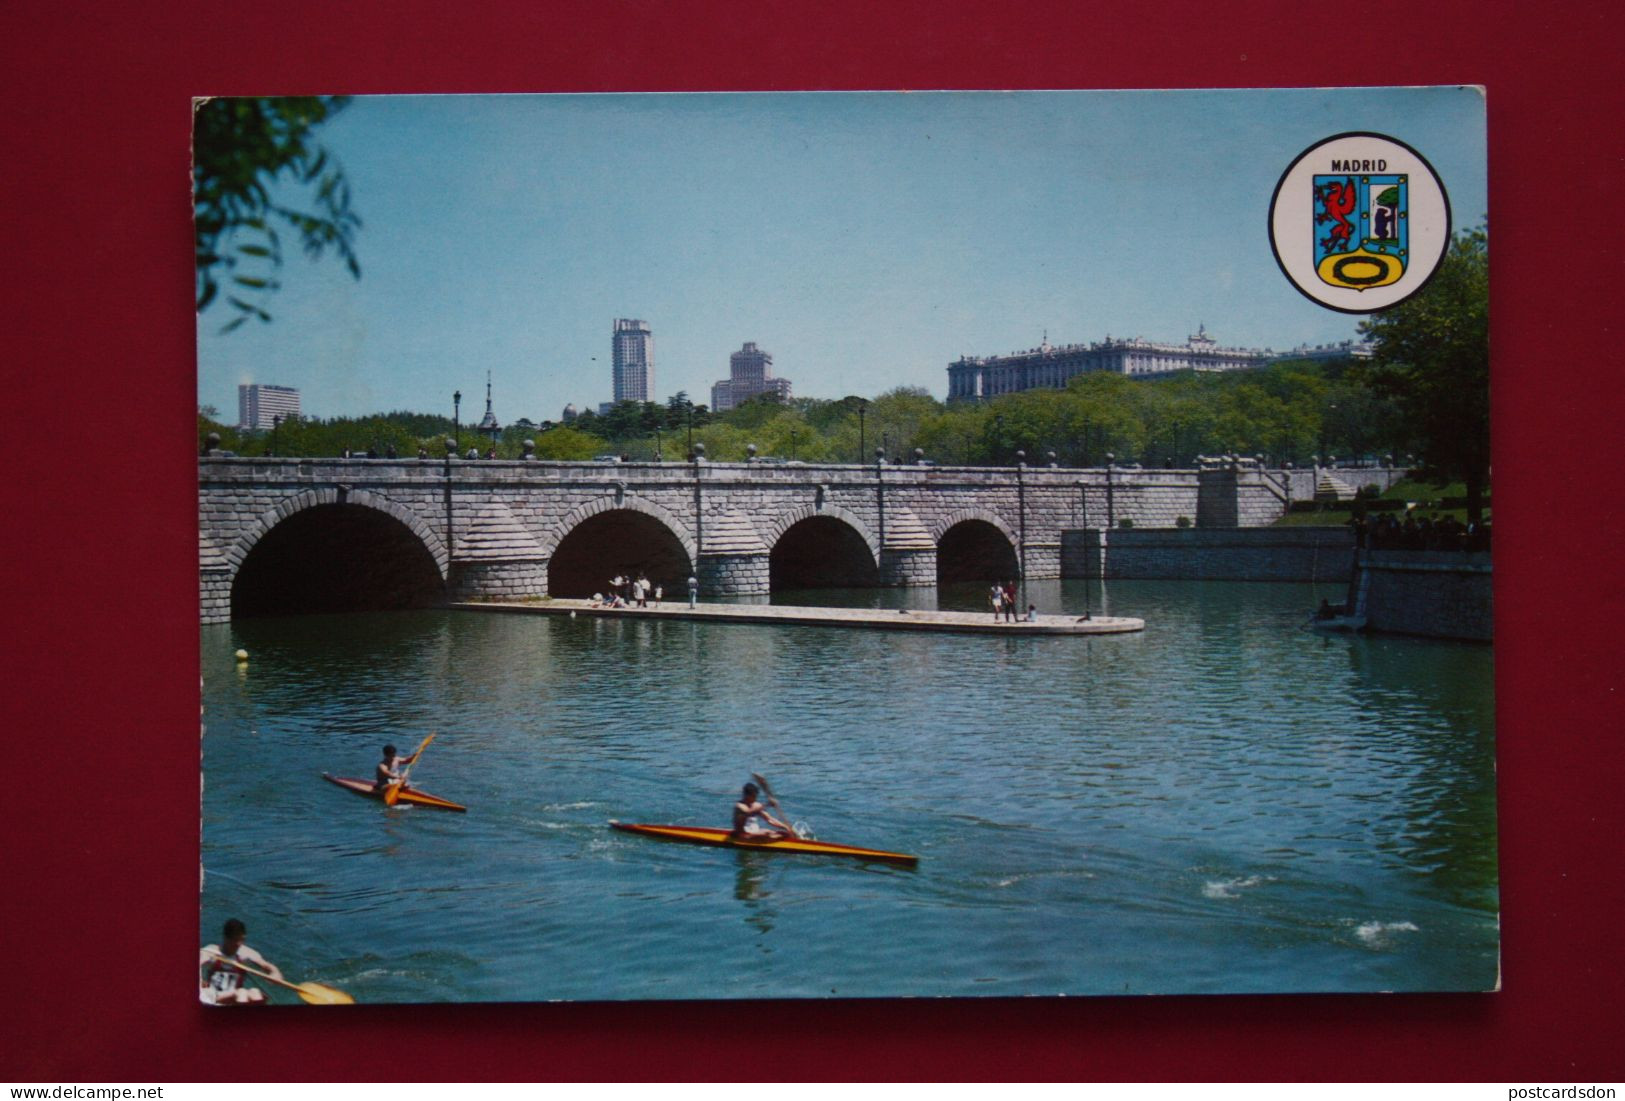 Postcard Madrid -   Segovia Bridge- Rowing -  1970s  KAYAK - Rudersport